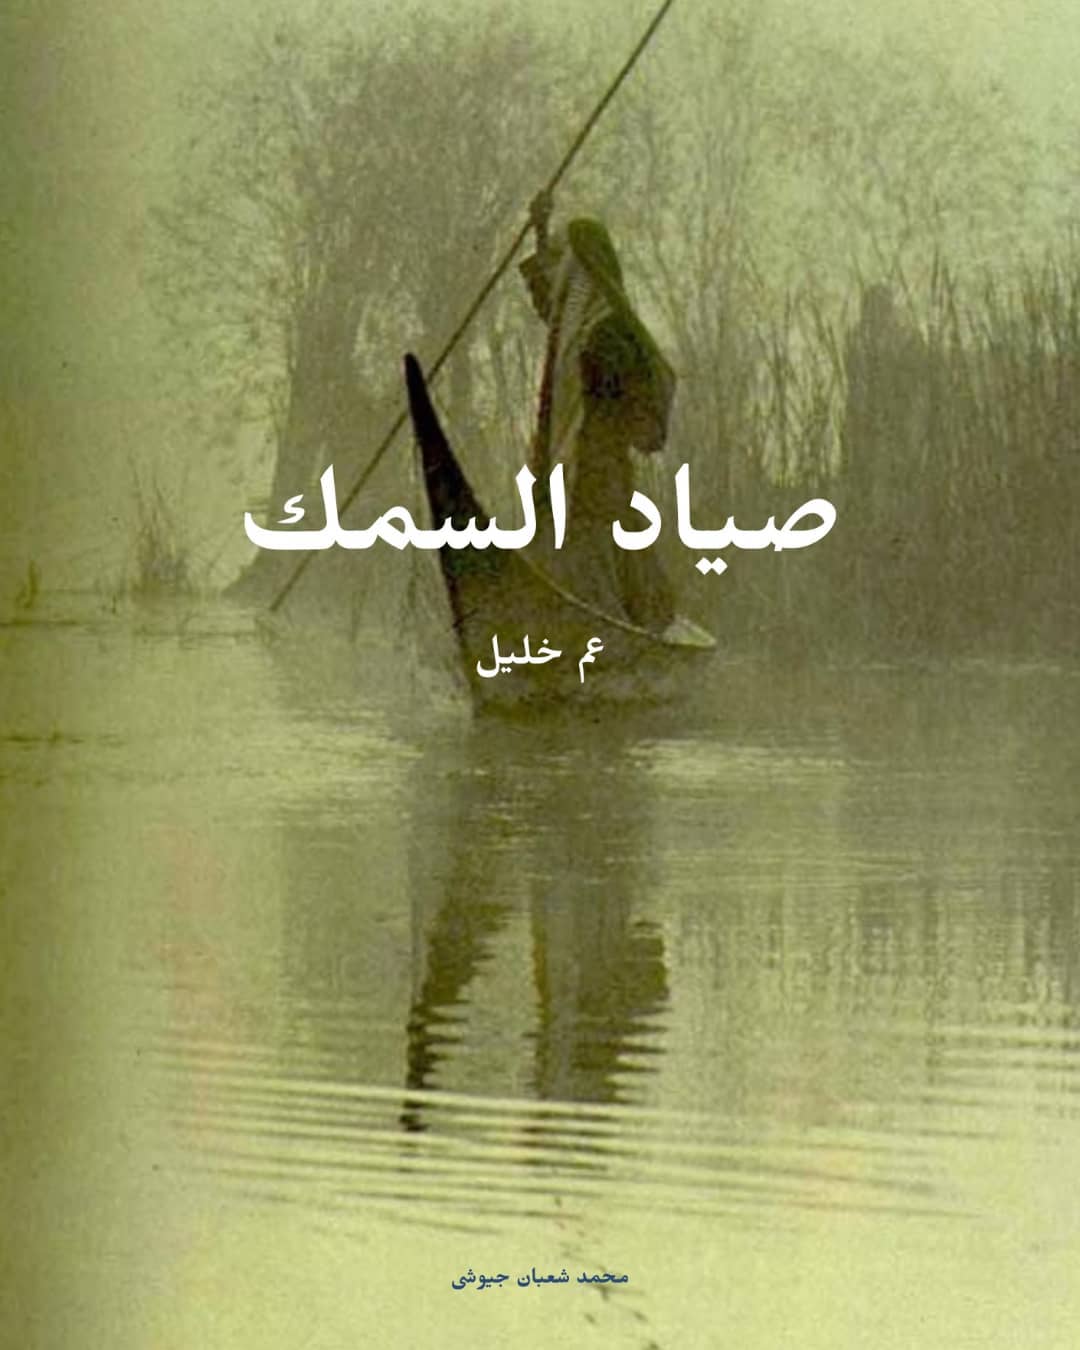 mero sadekالحلقه الاولى من عم خليل الصياد تأليف محمد شعبان جيوشى اداء صوتى